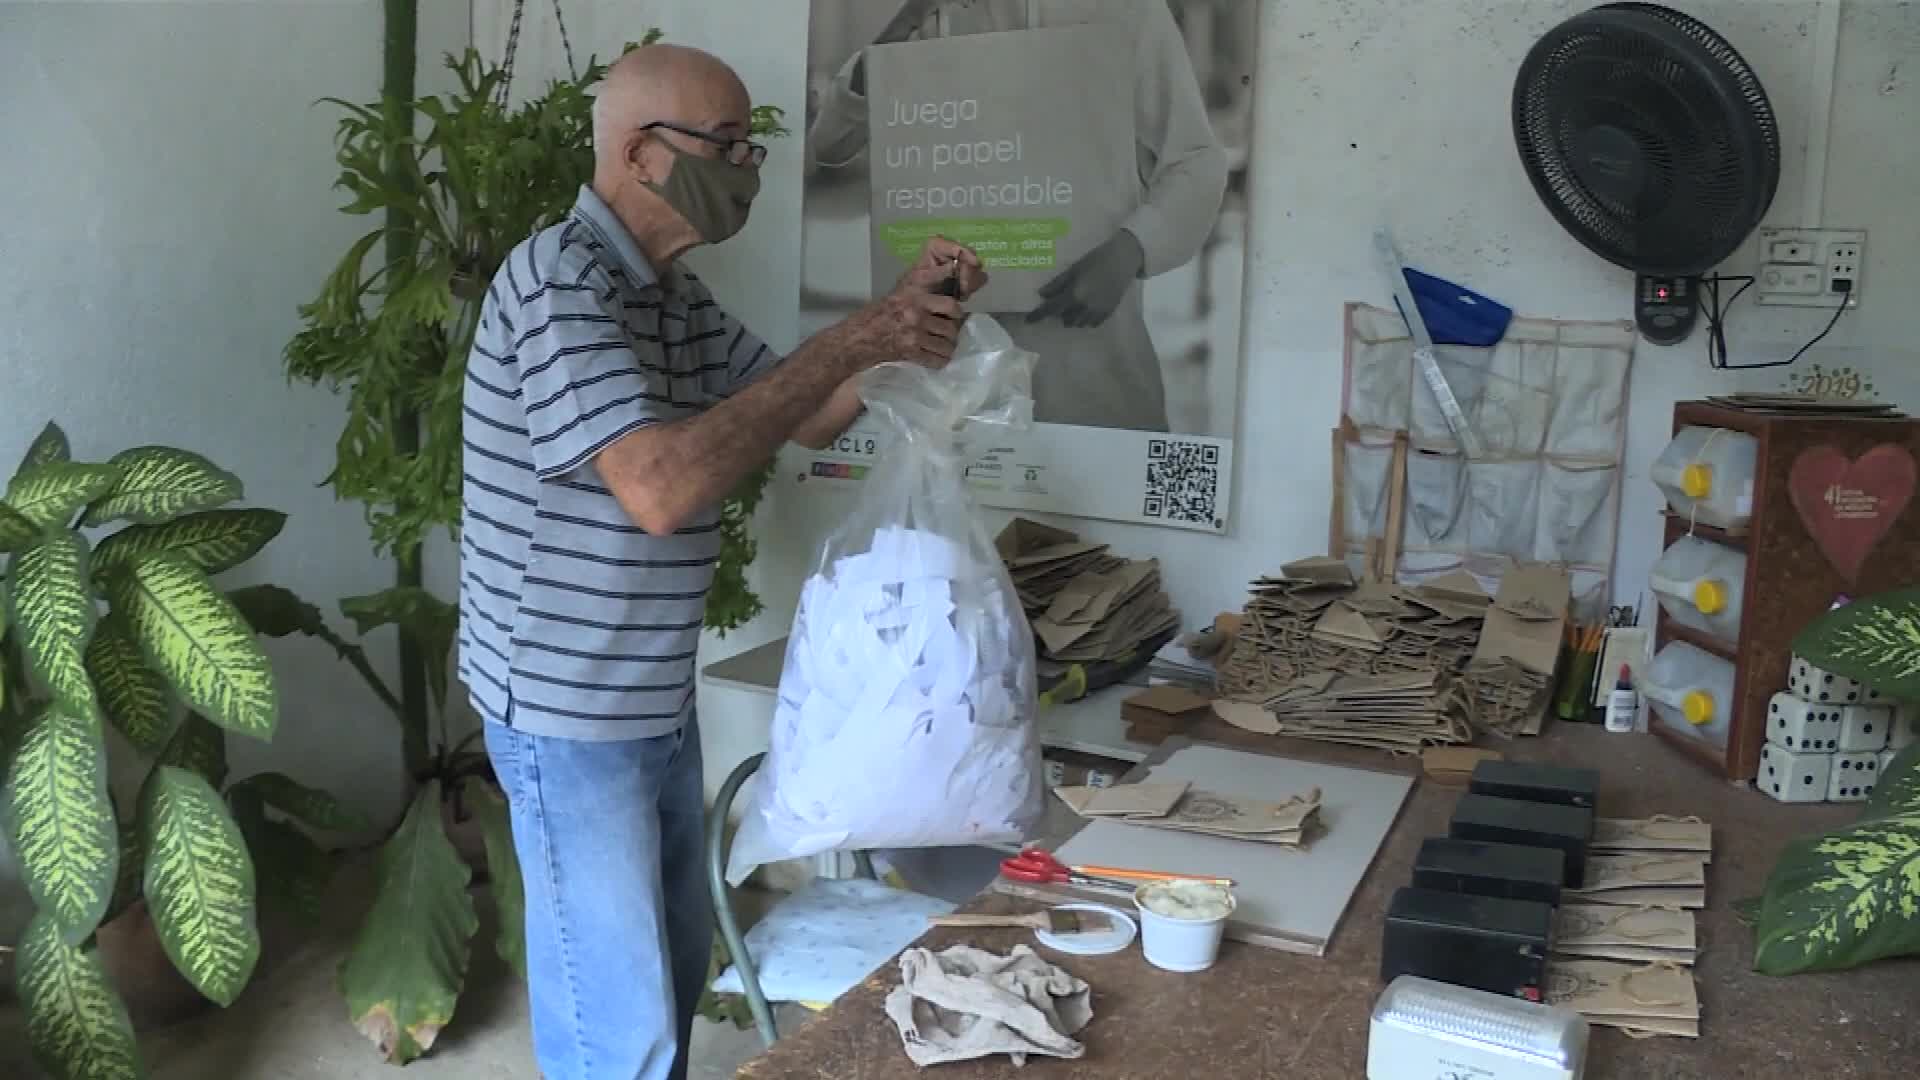 Proyecto ecológico en La Habana convierte papel de desecho en objetos artesanales